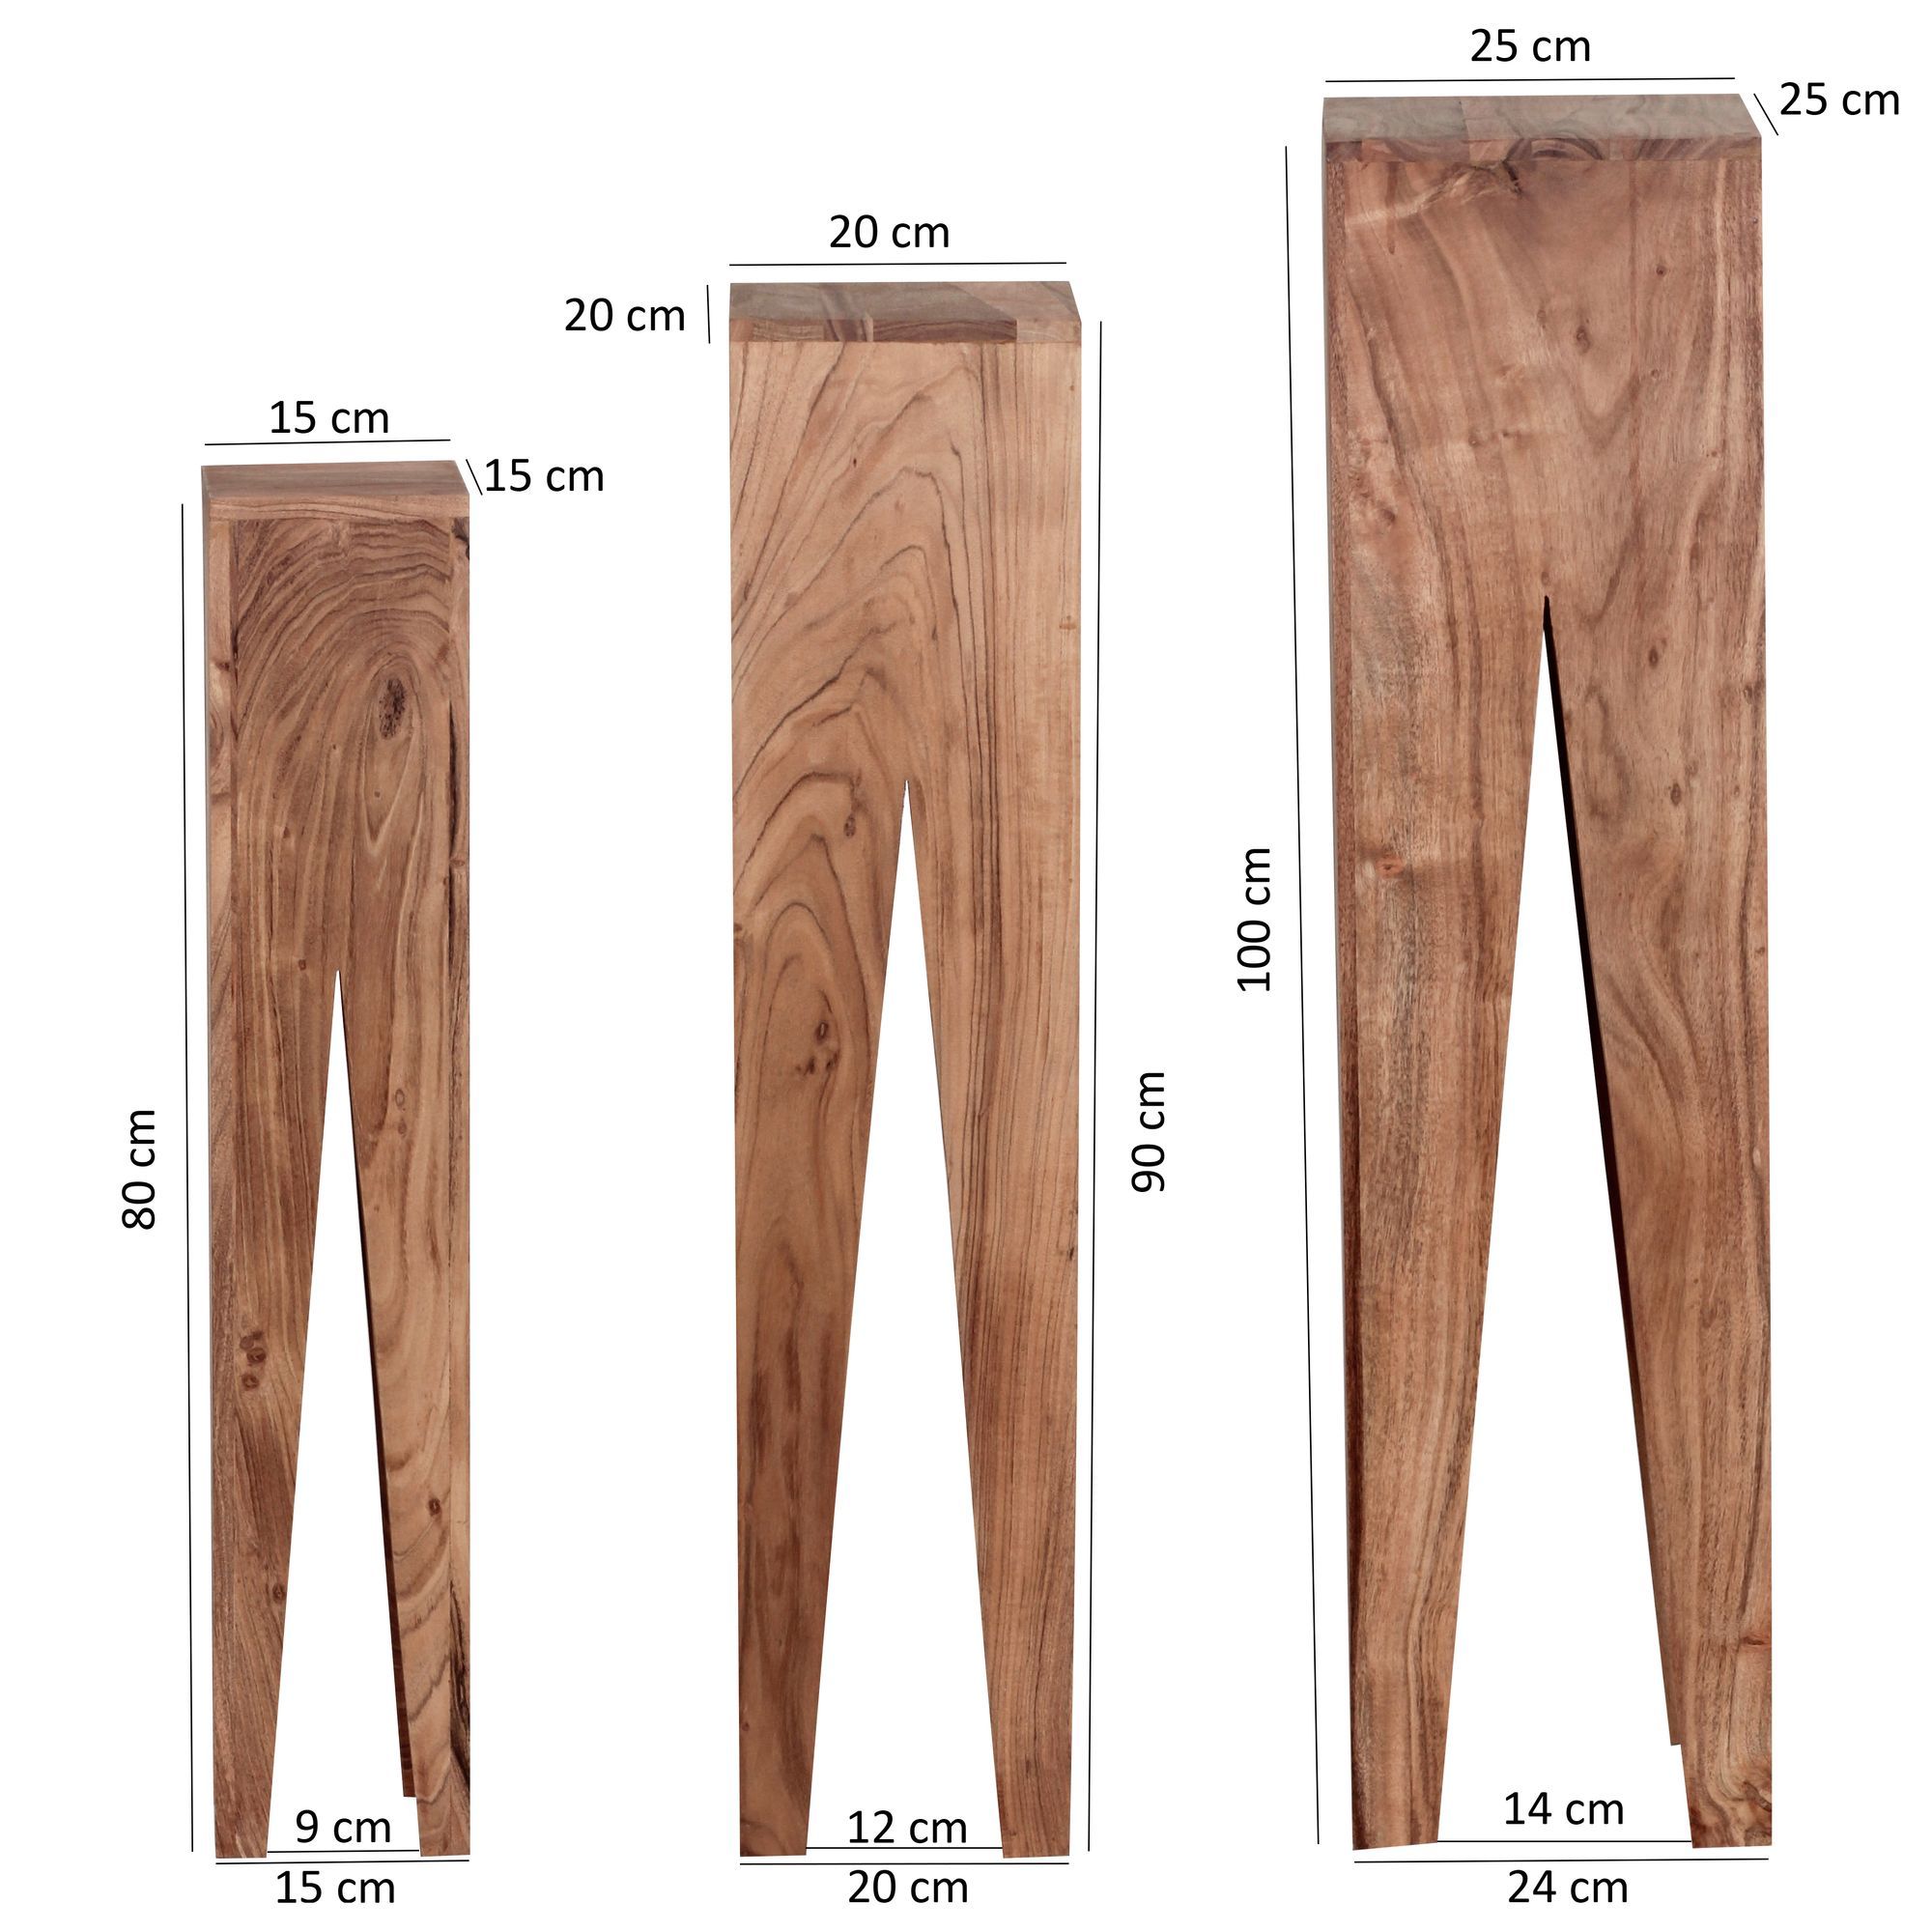 Bloc en bois massif - 20 x 20 x 20 cm - Lot de 3 supports en bois - Support  en bois - Décoration pour la maison - Colonne de fleurs en